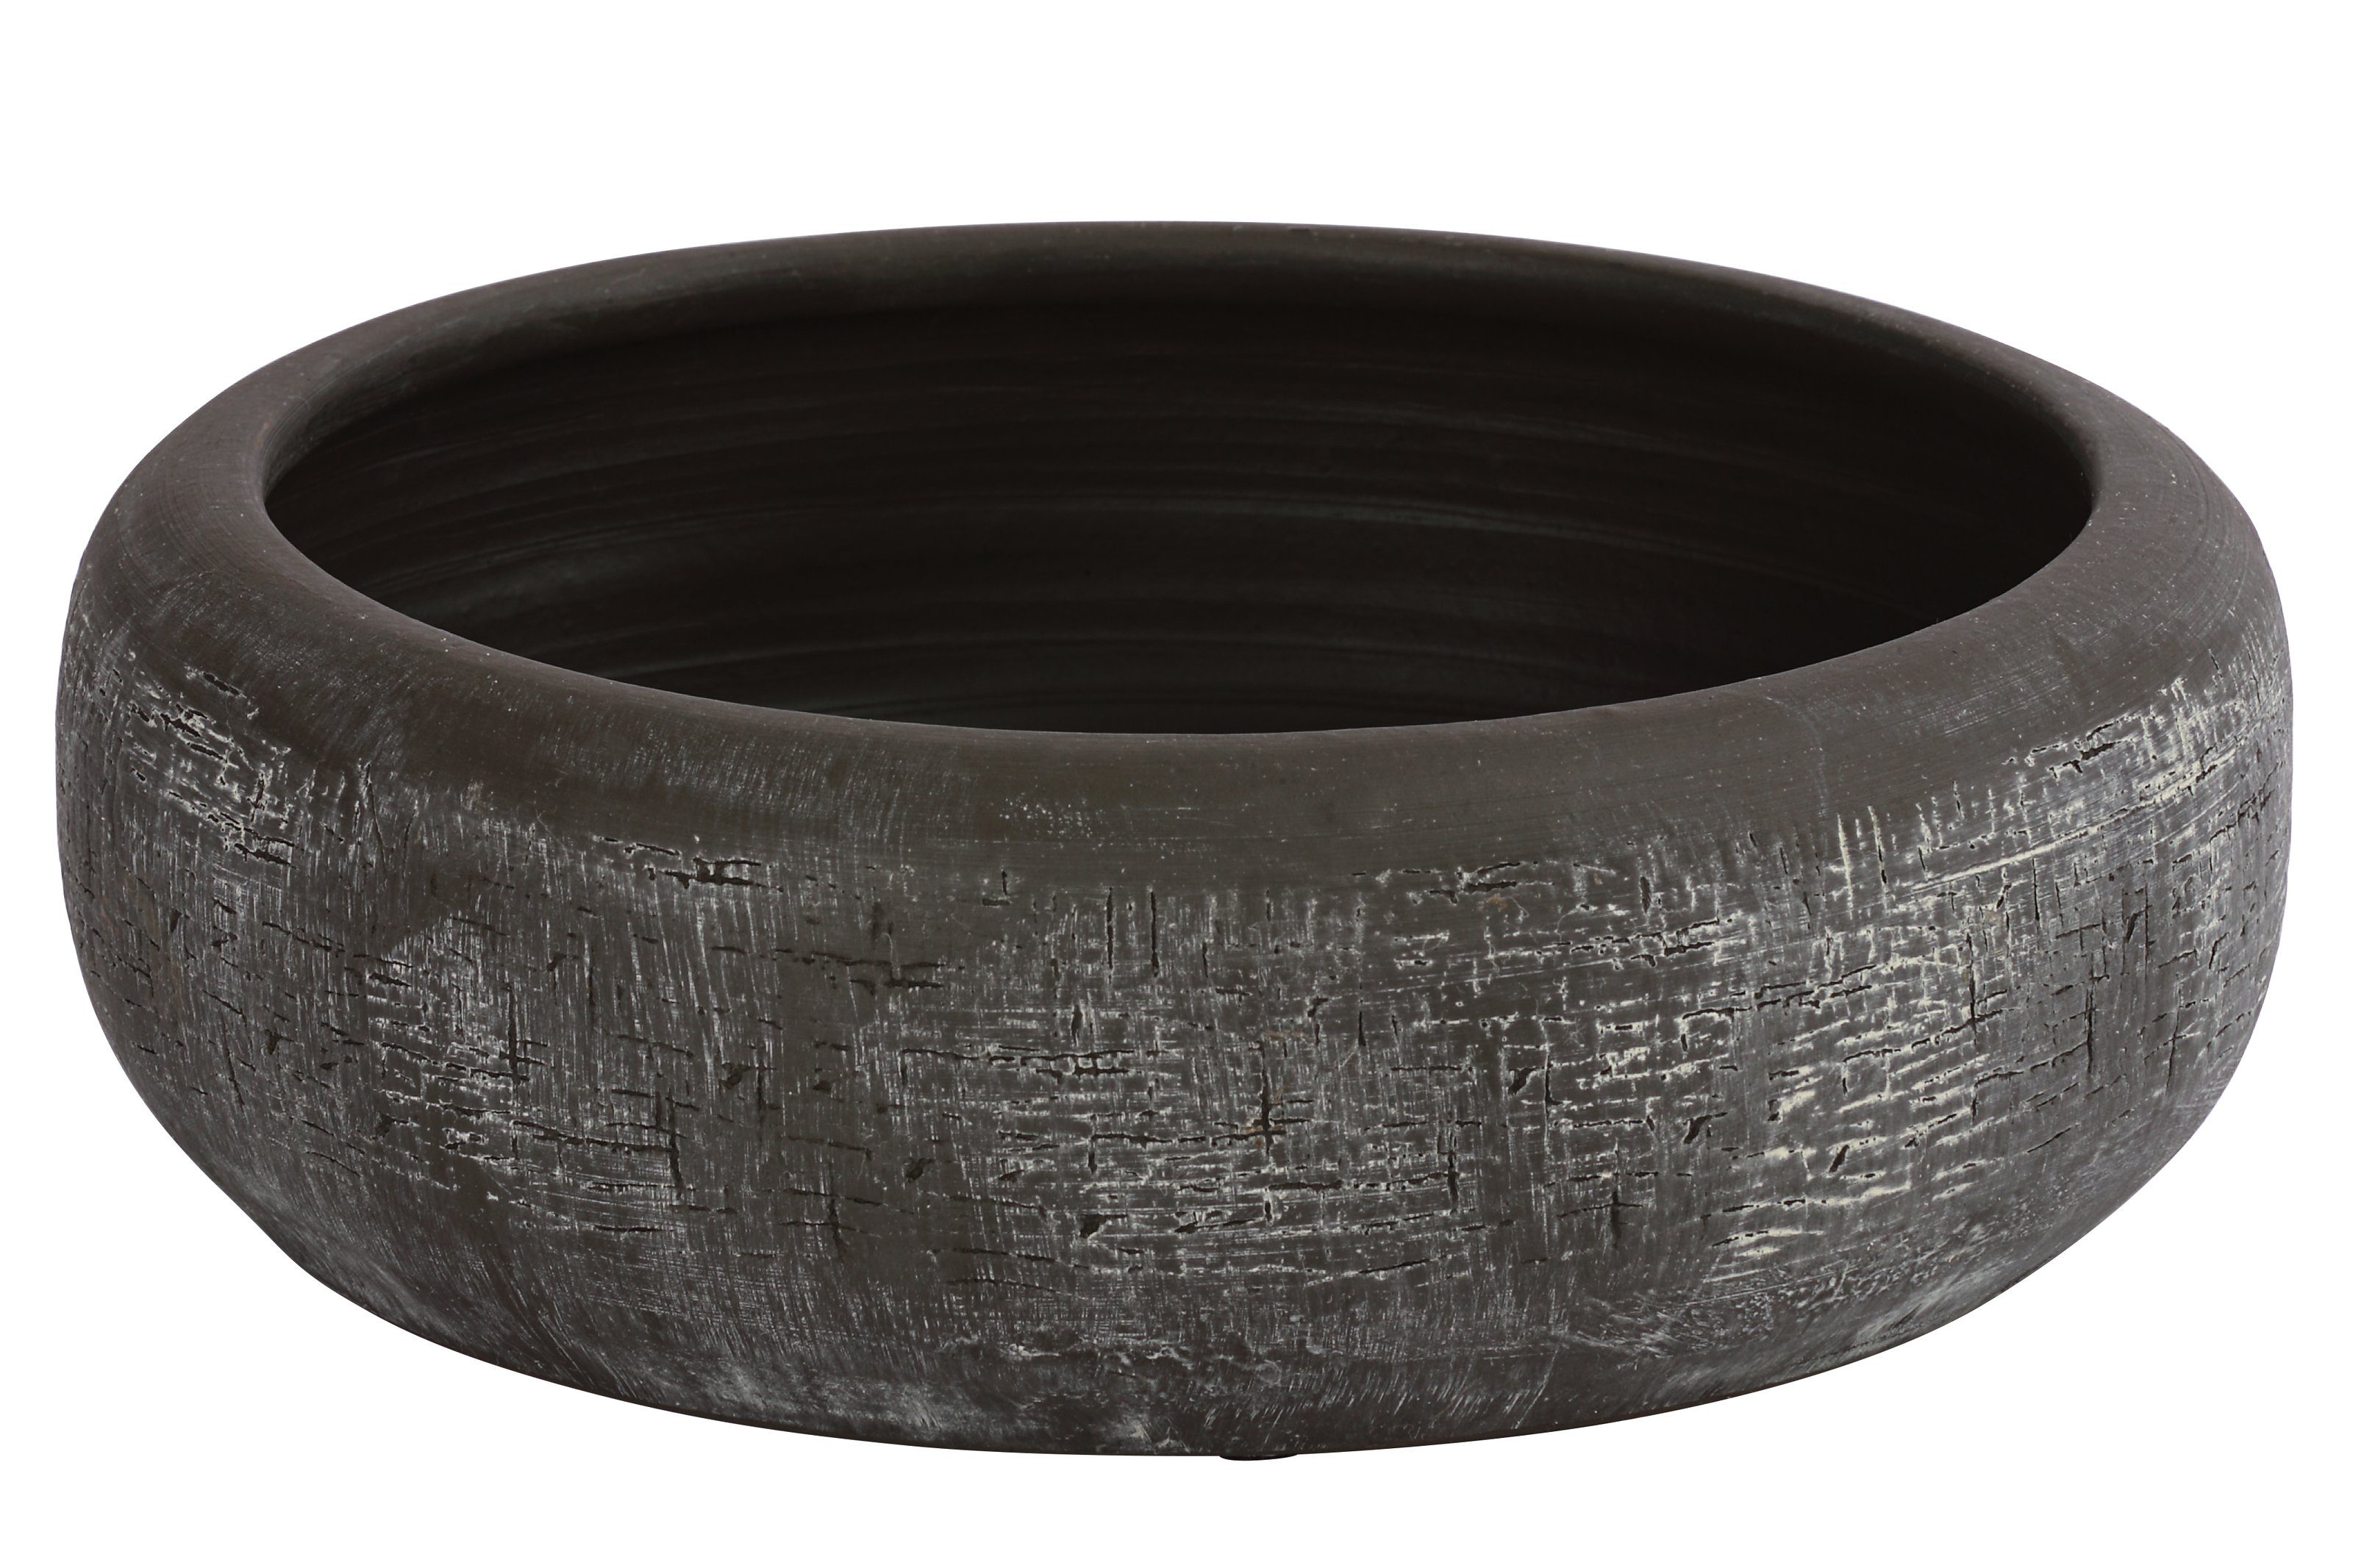 Dehner Übertopf Pflanzschale Romy, Ø 23, Höhe 11 cm, rund, Keramik, mit reliefartiger Oberfläche